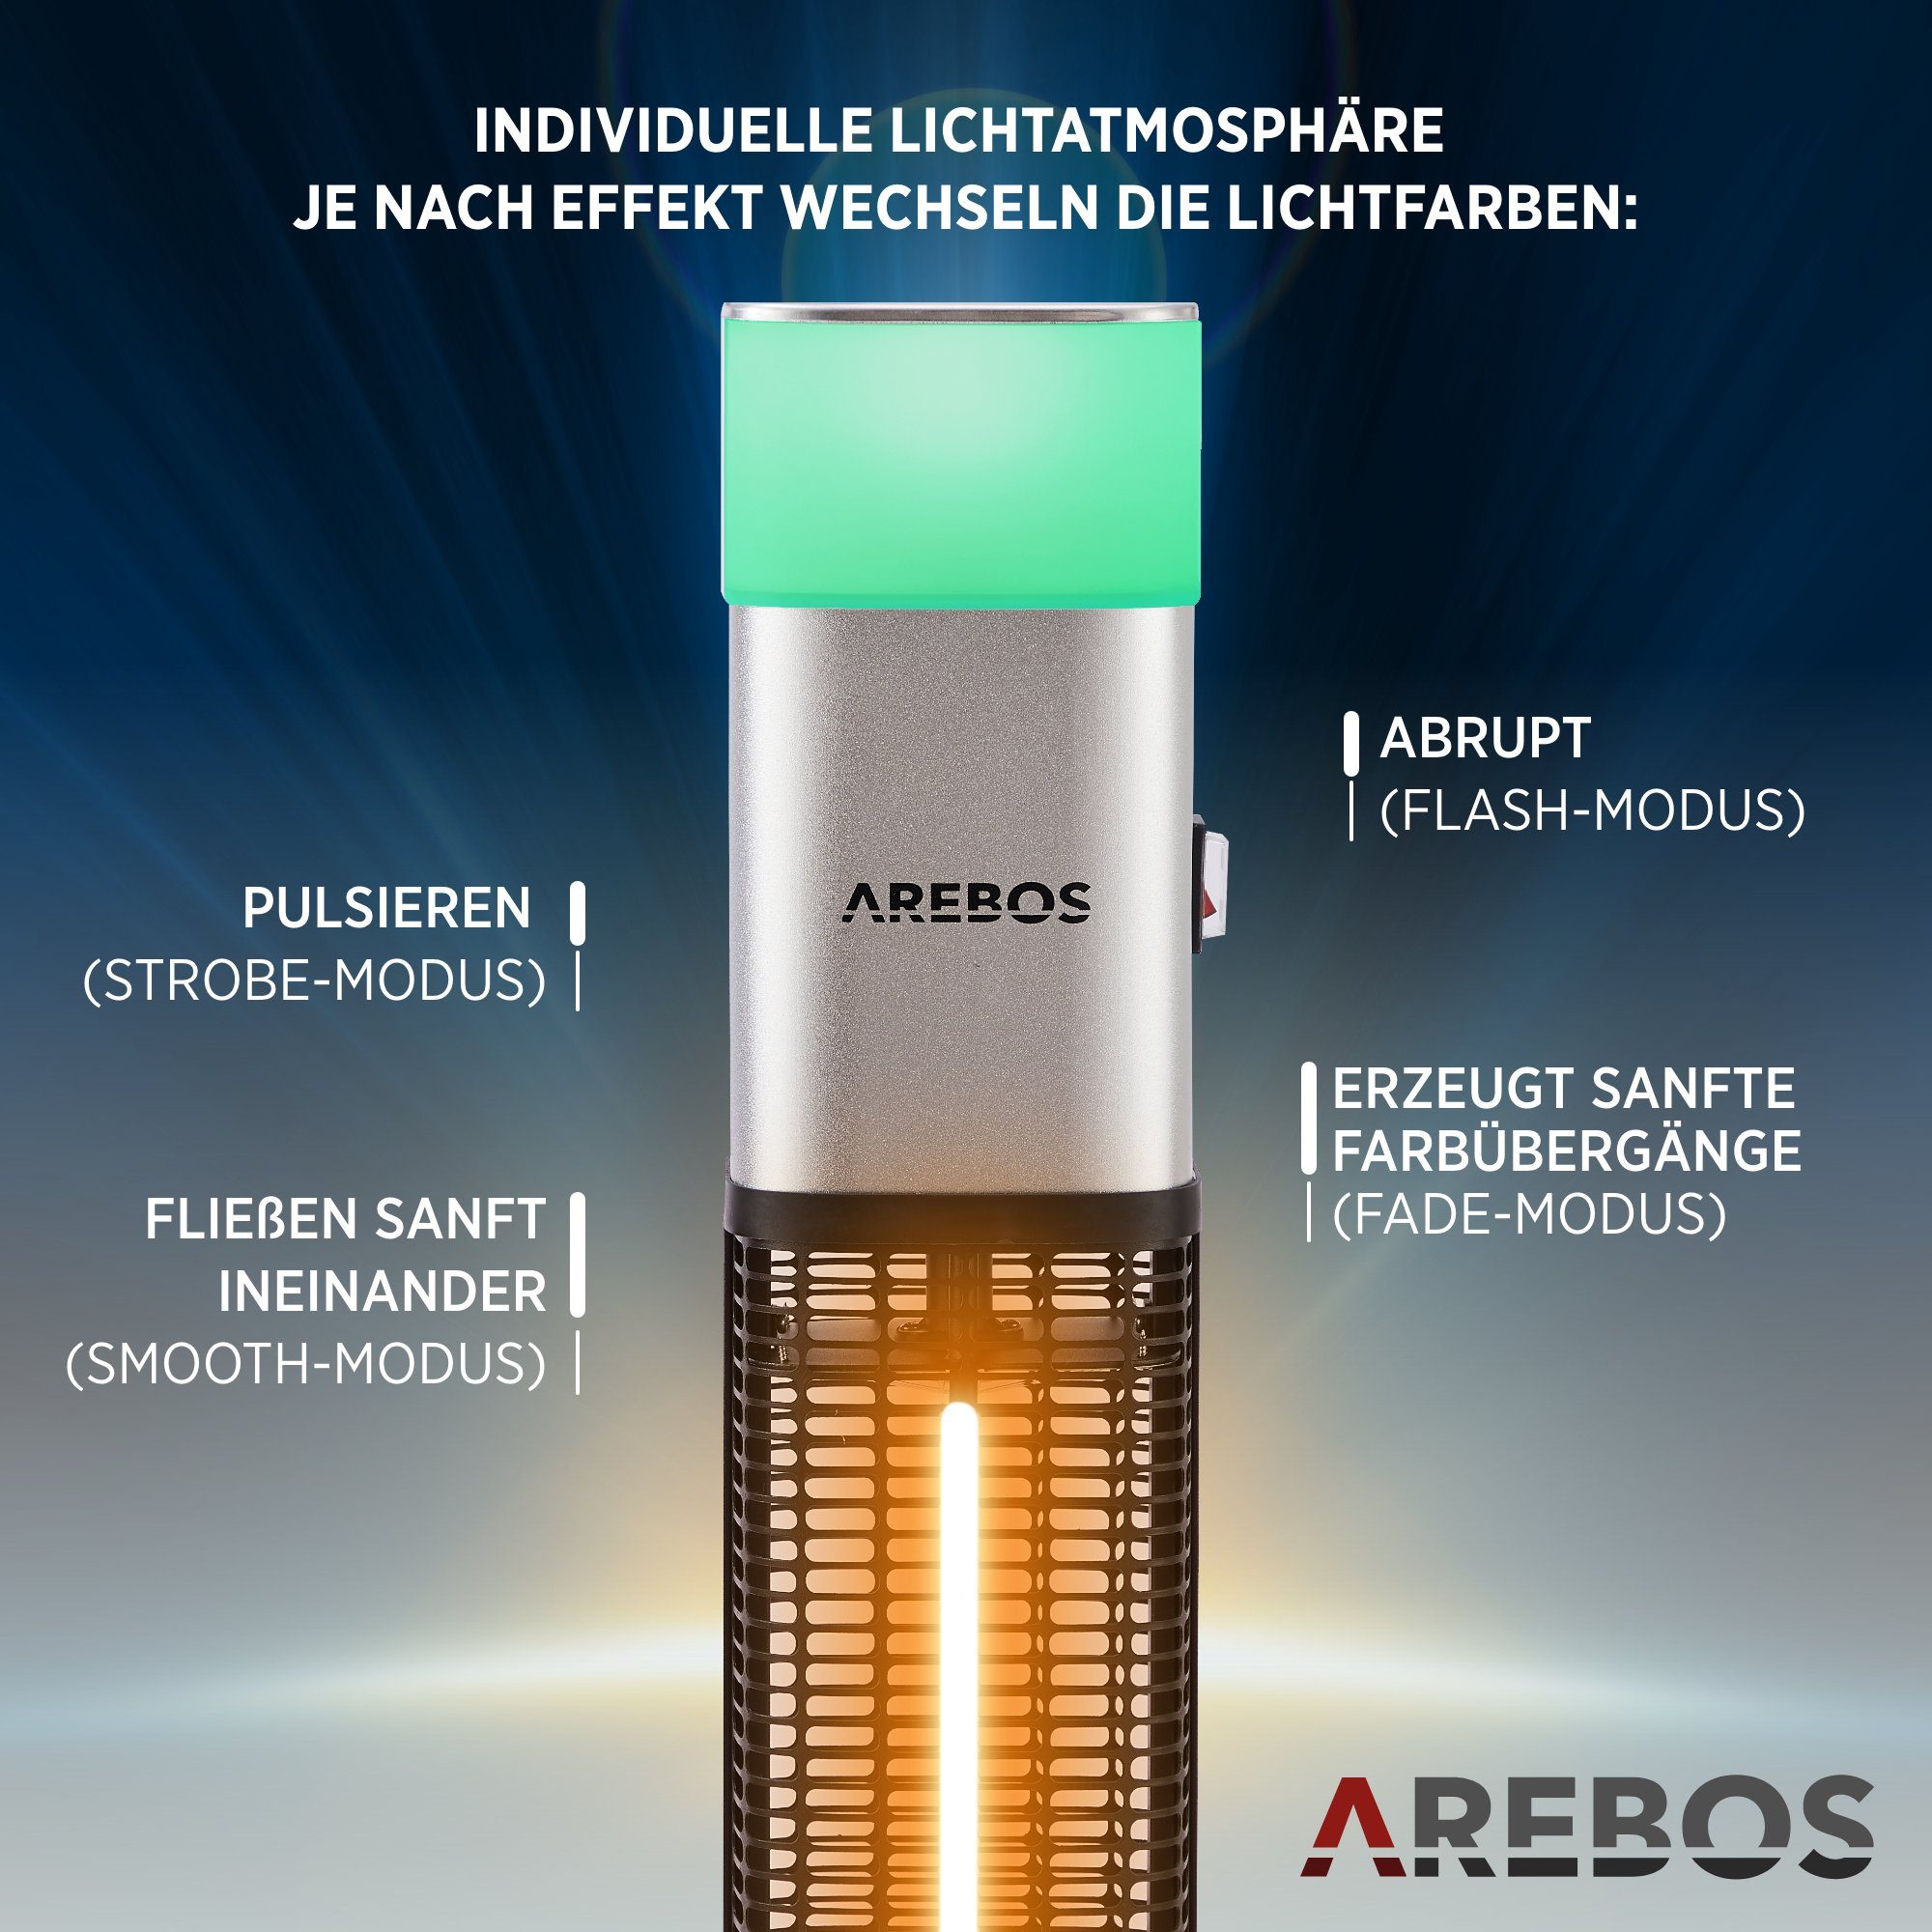 Heizstrahler silber Watt LED, Low-Glare-Technik 1500 mit inkl.16 Fernbedienung, Kipp-Abschalter, LED-Licht Arebos Farben, integrierte Stand,